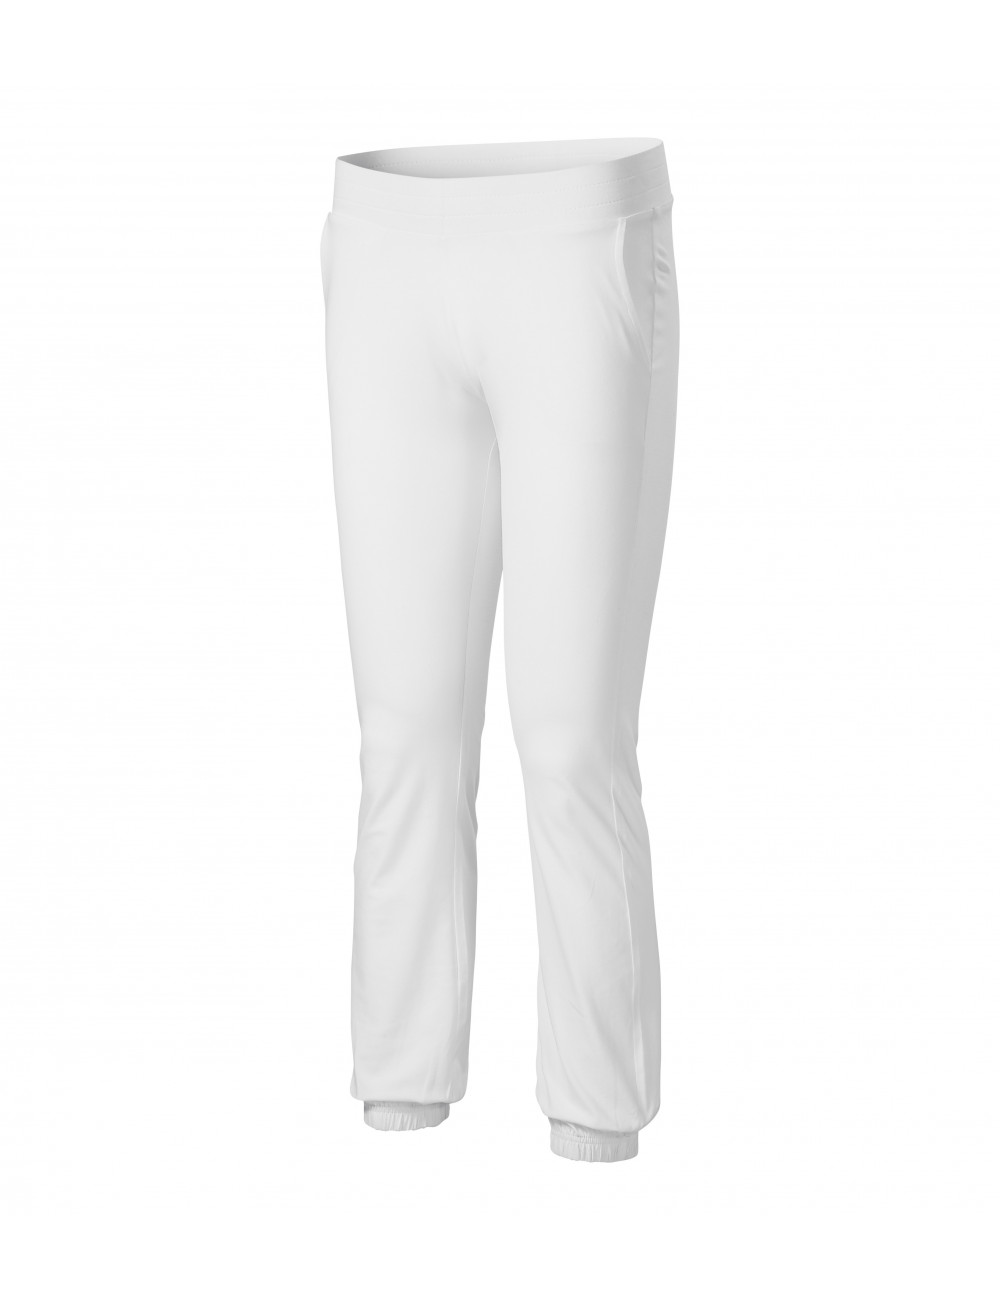 Spodnie dresowe damskie leisure 603 biały Adler Malfini